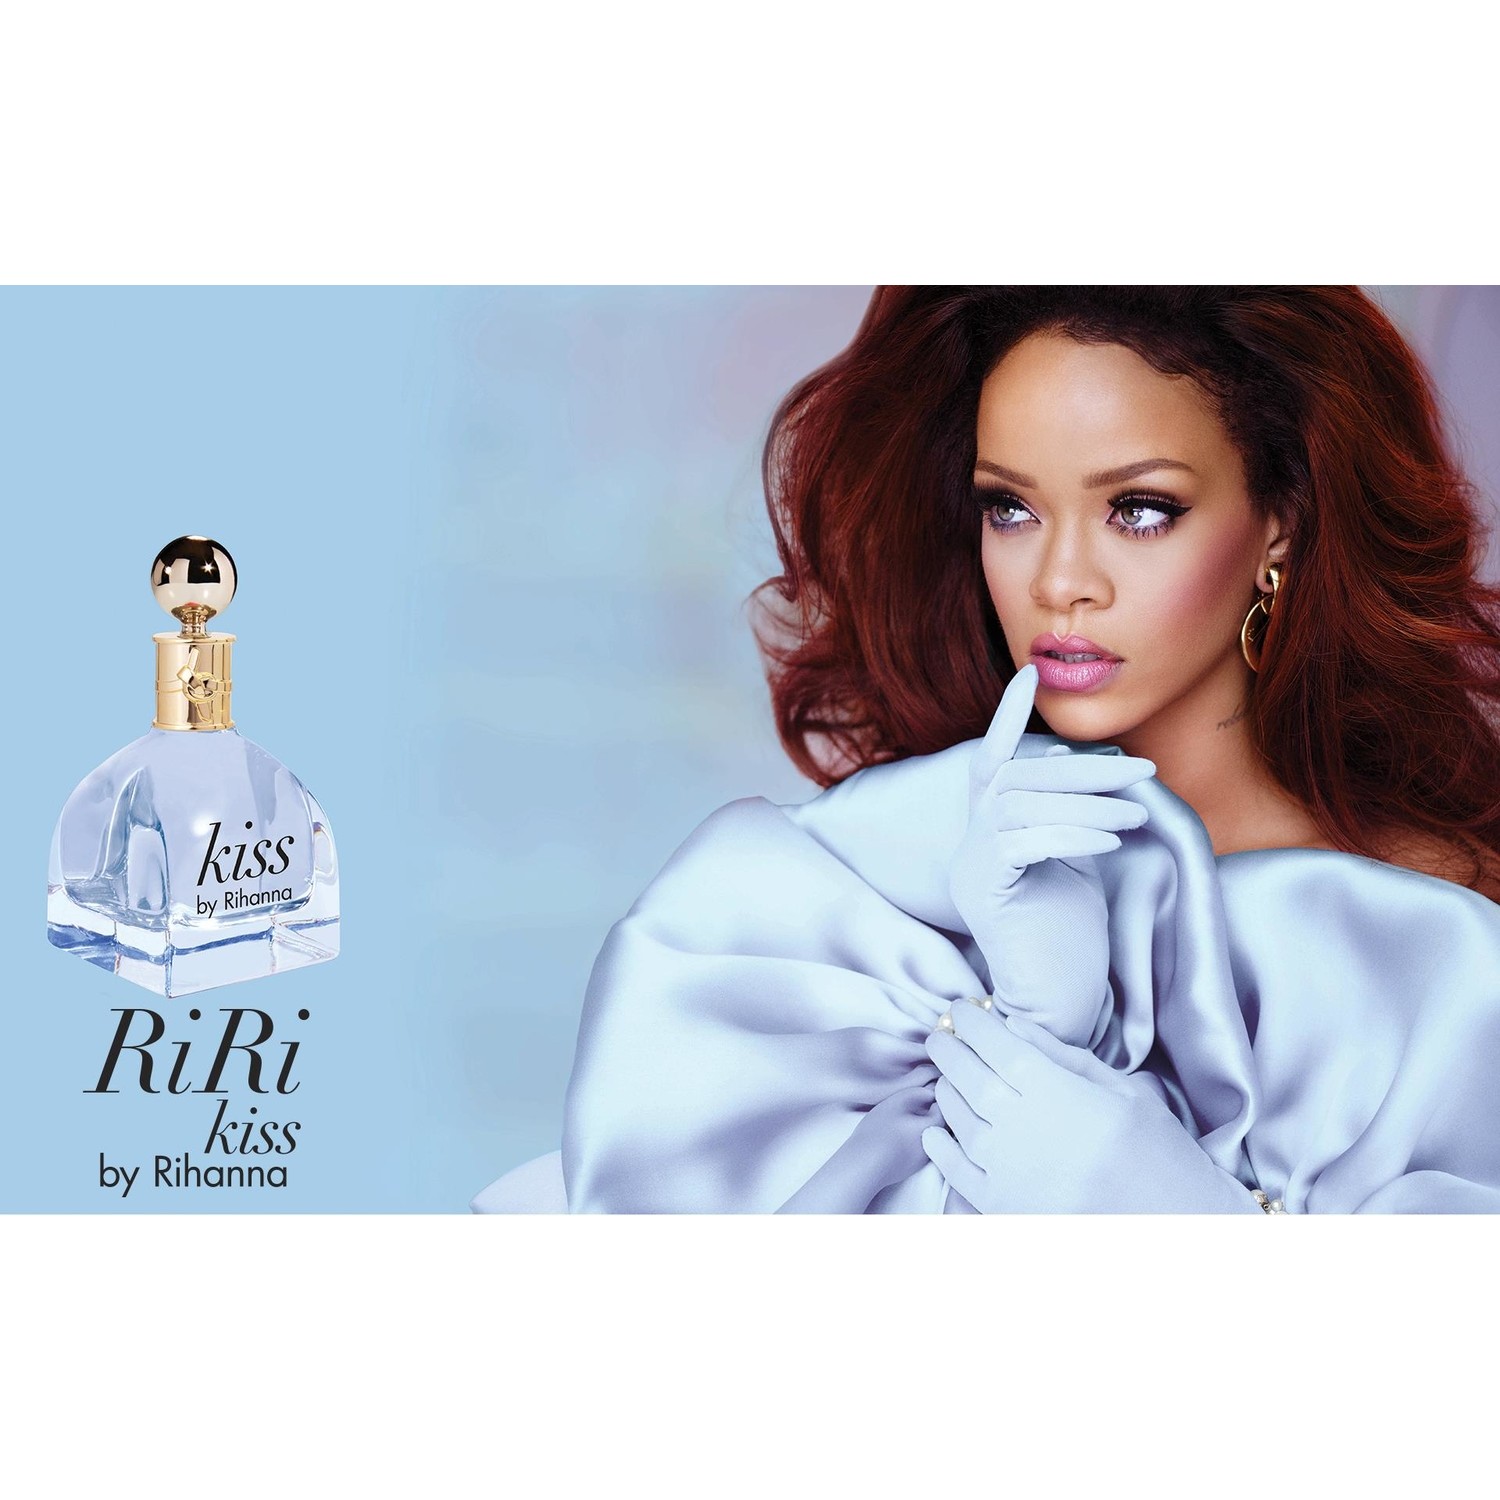 Духи которые рекламирует Рианна. Rihanna реклама духов с женщиной. Kiss me Парфюм. Rihanna kissed